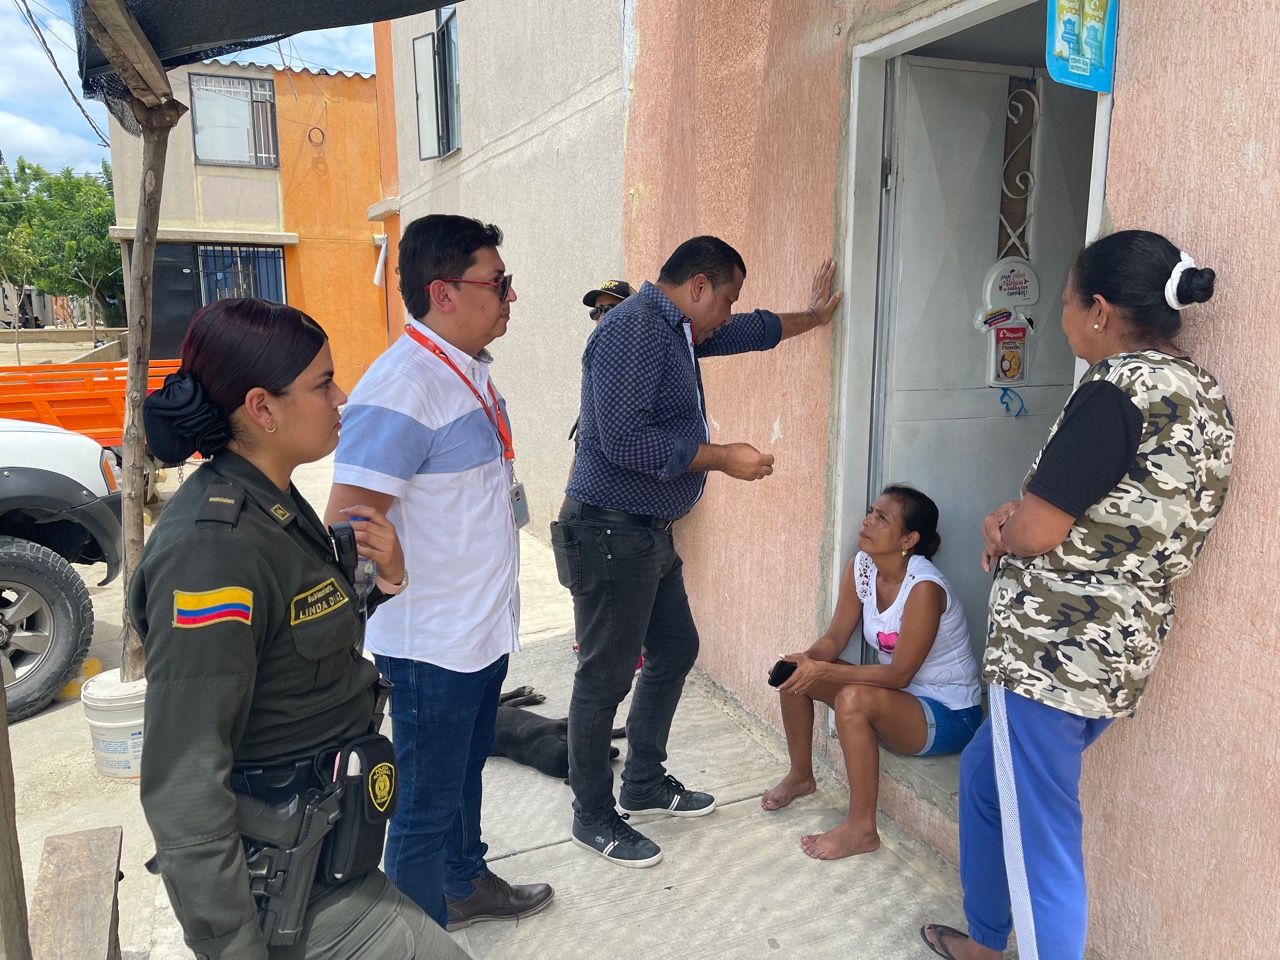 El secretario de Seguridad y Convivencia Ciudadana, Bladimir Torres, visitó la manzana 2 para dialogar con los propietarios de las viviendas de interés social.